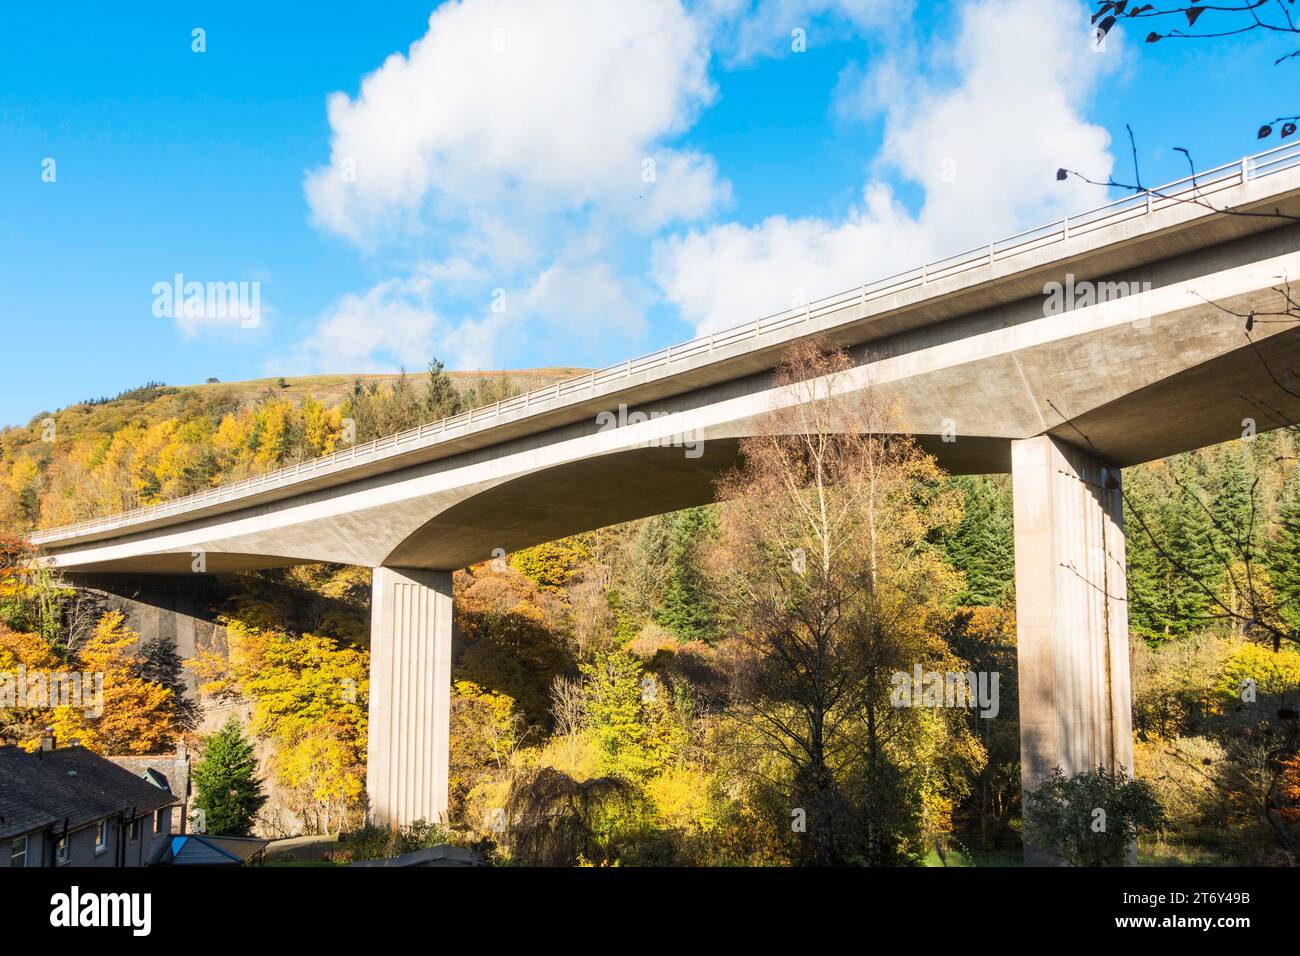 Die preisgekrönte Spannbetonbrücke, die die A66 über den Fluss Greta in der Nähe von Keswick, Cumbria, England, führt Stockfoto